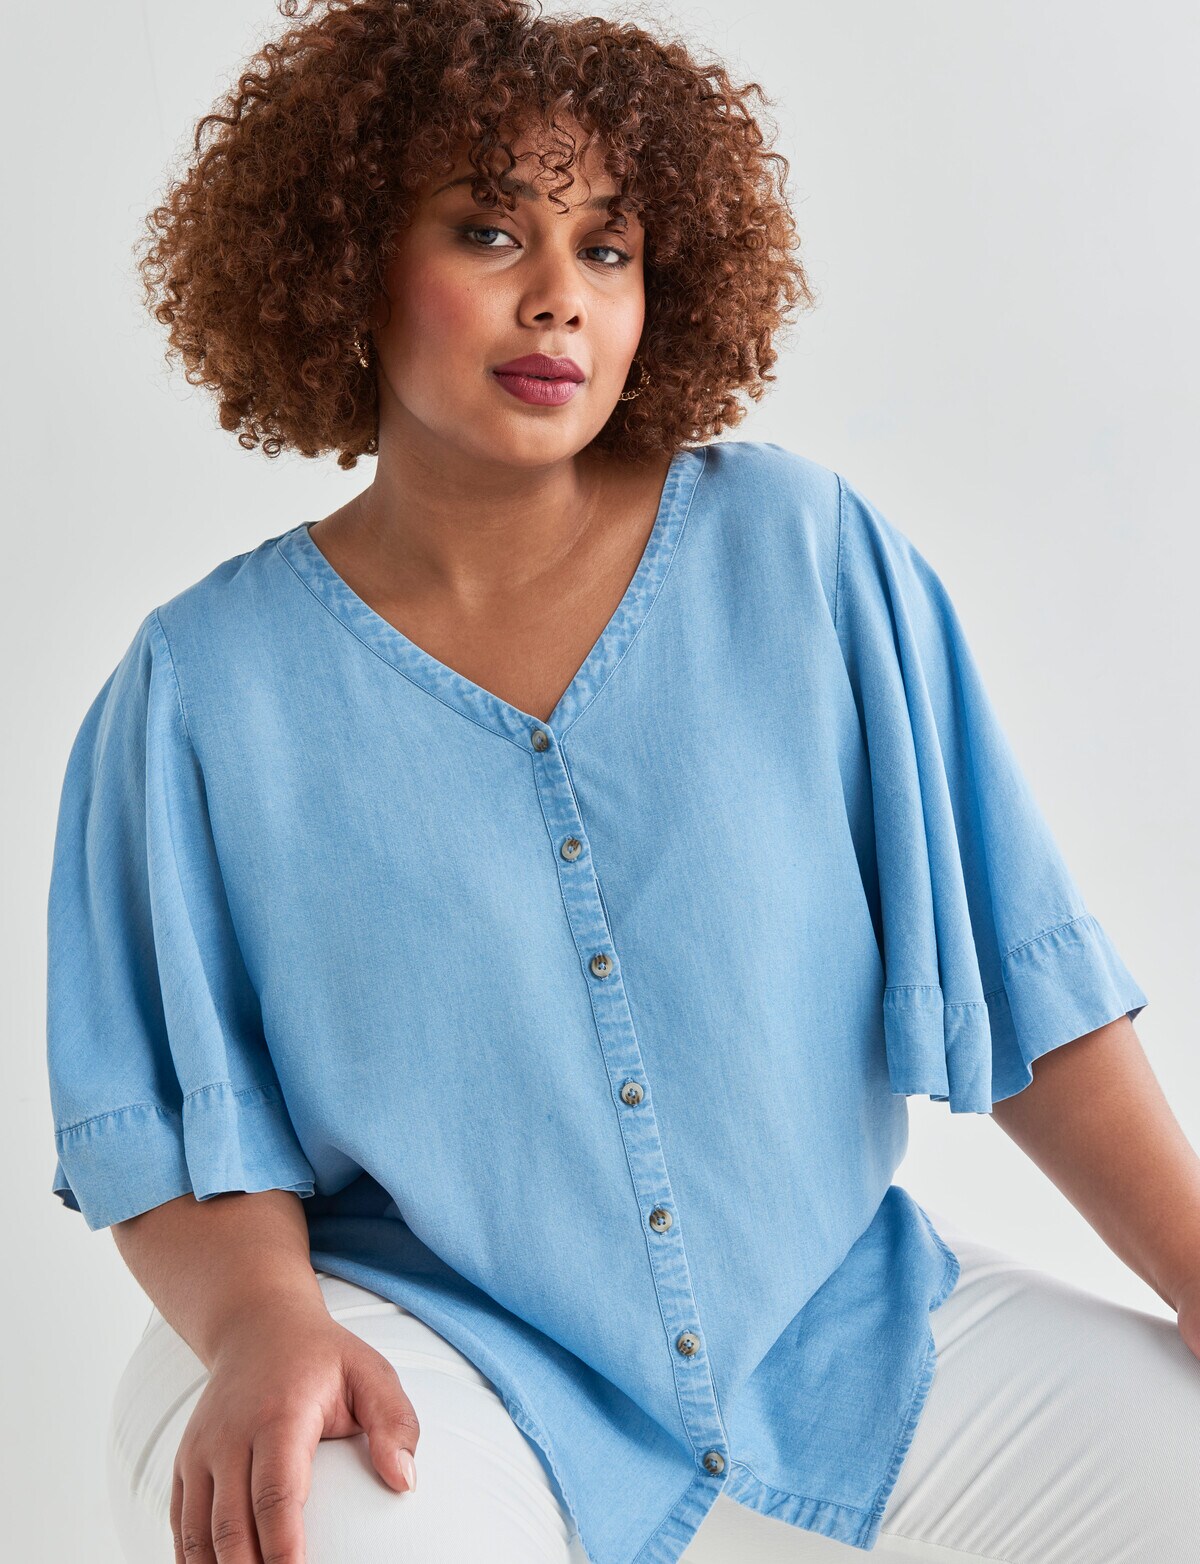 Women's Summer Casual Button Down Denim Shirt Collared Short Sleeve Shirt  Pocket Tops - Walmart.com